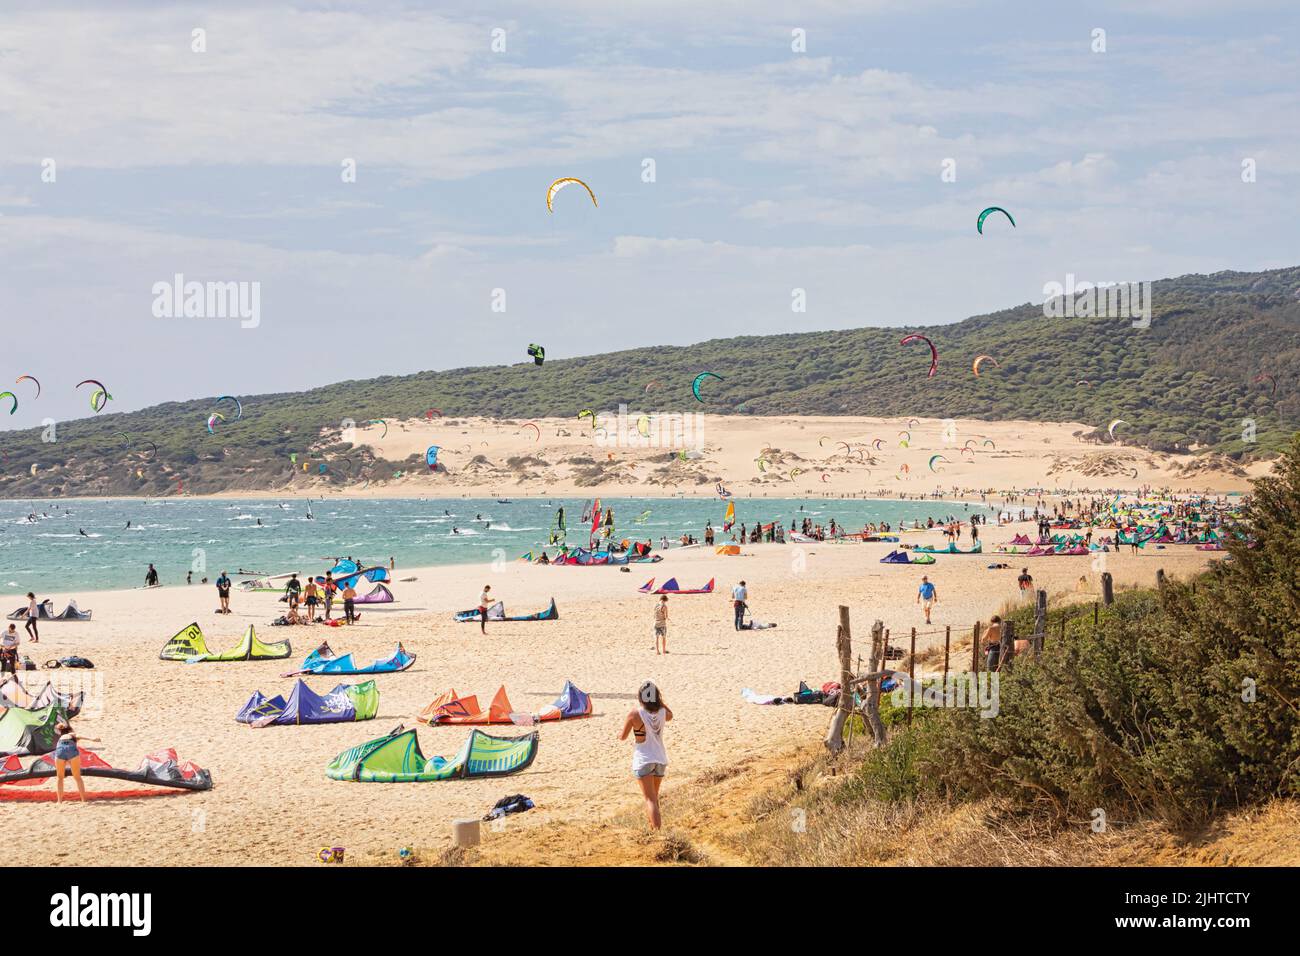 Windsurfistas en la Playa de Valdevaqueros, Punta Paloma, Tarifa, Costa de la Luz, Provincia de Cádiz, Andalucía, sur de España. Foto de stock